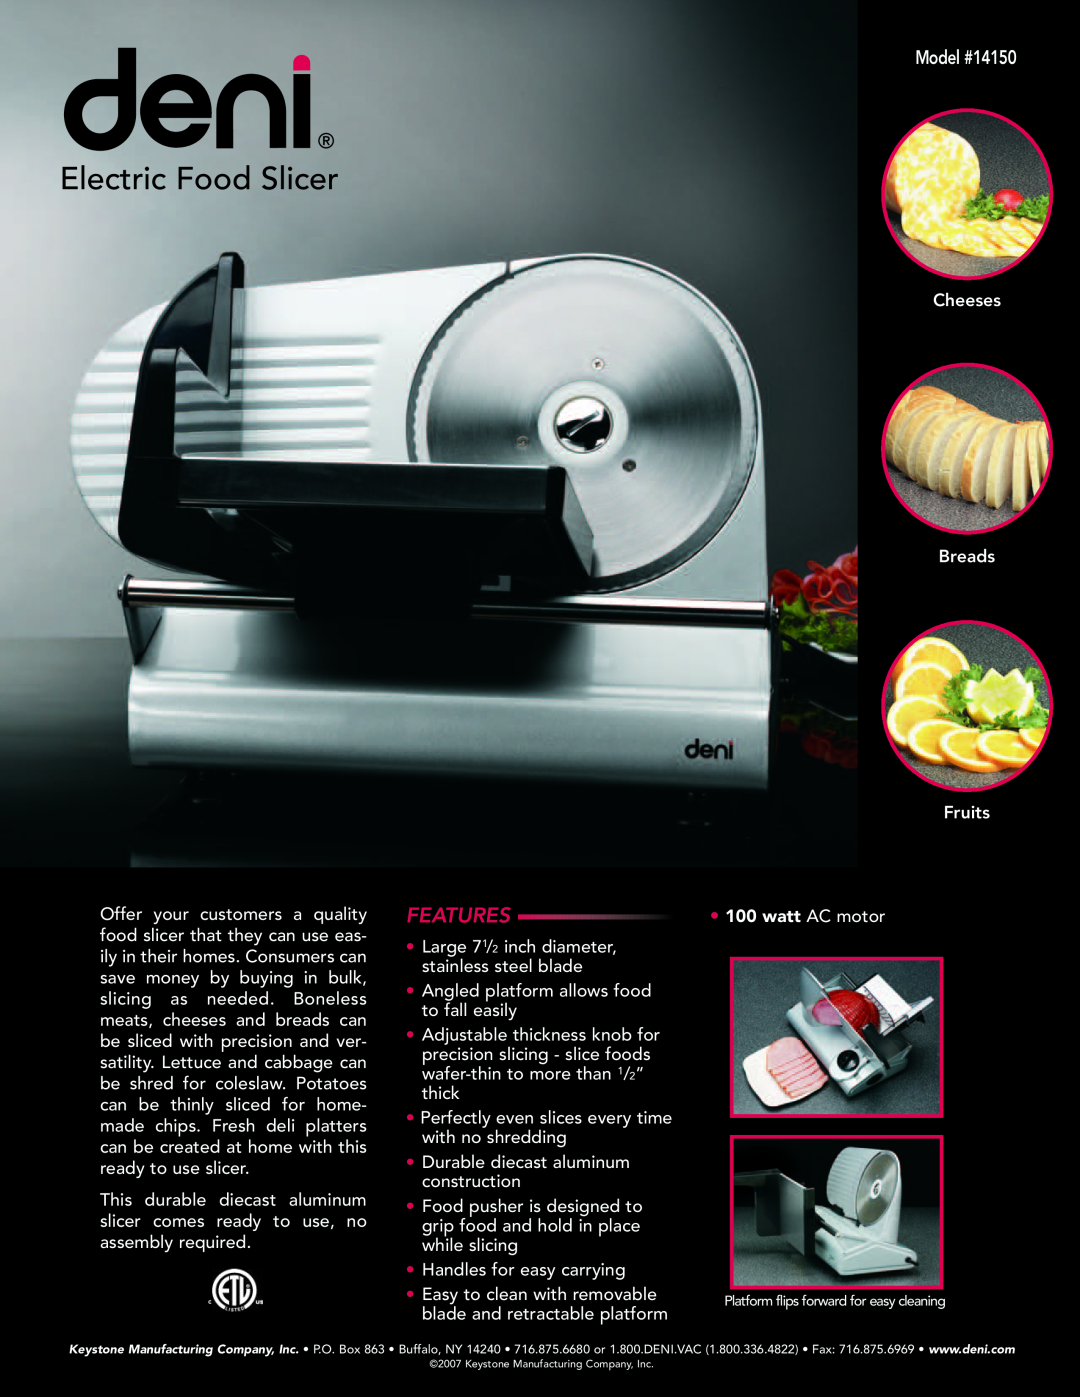 Deni manual Electric Food Slicer, Features, Model #14150, watt AC motor 